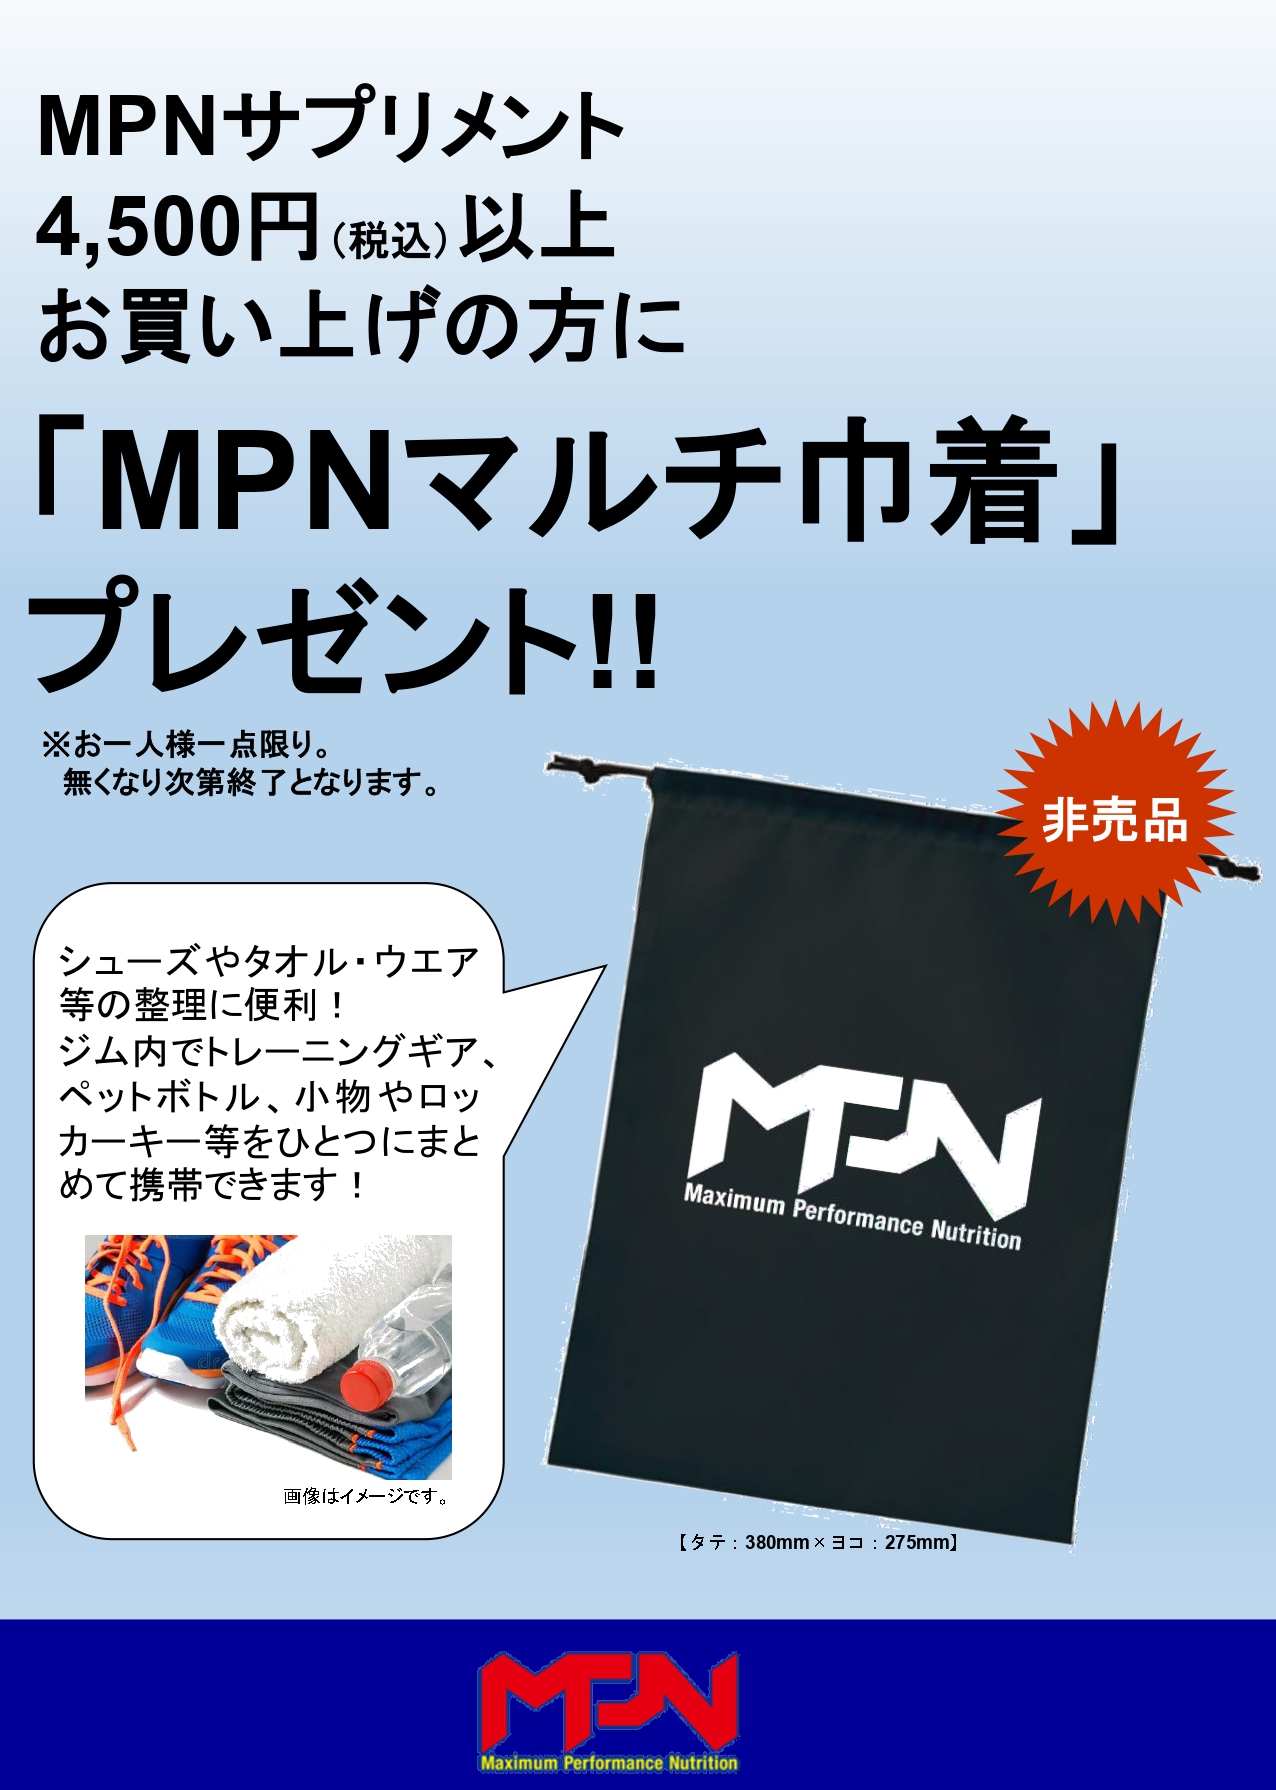 MPNマルチ巾着袋プレゼントキャンペーン